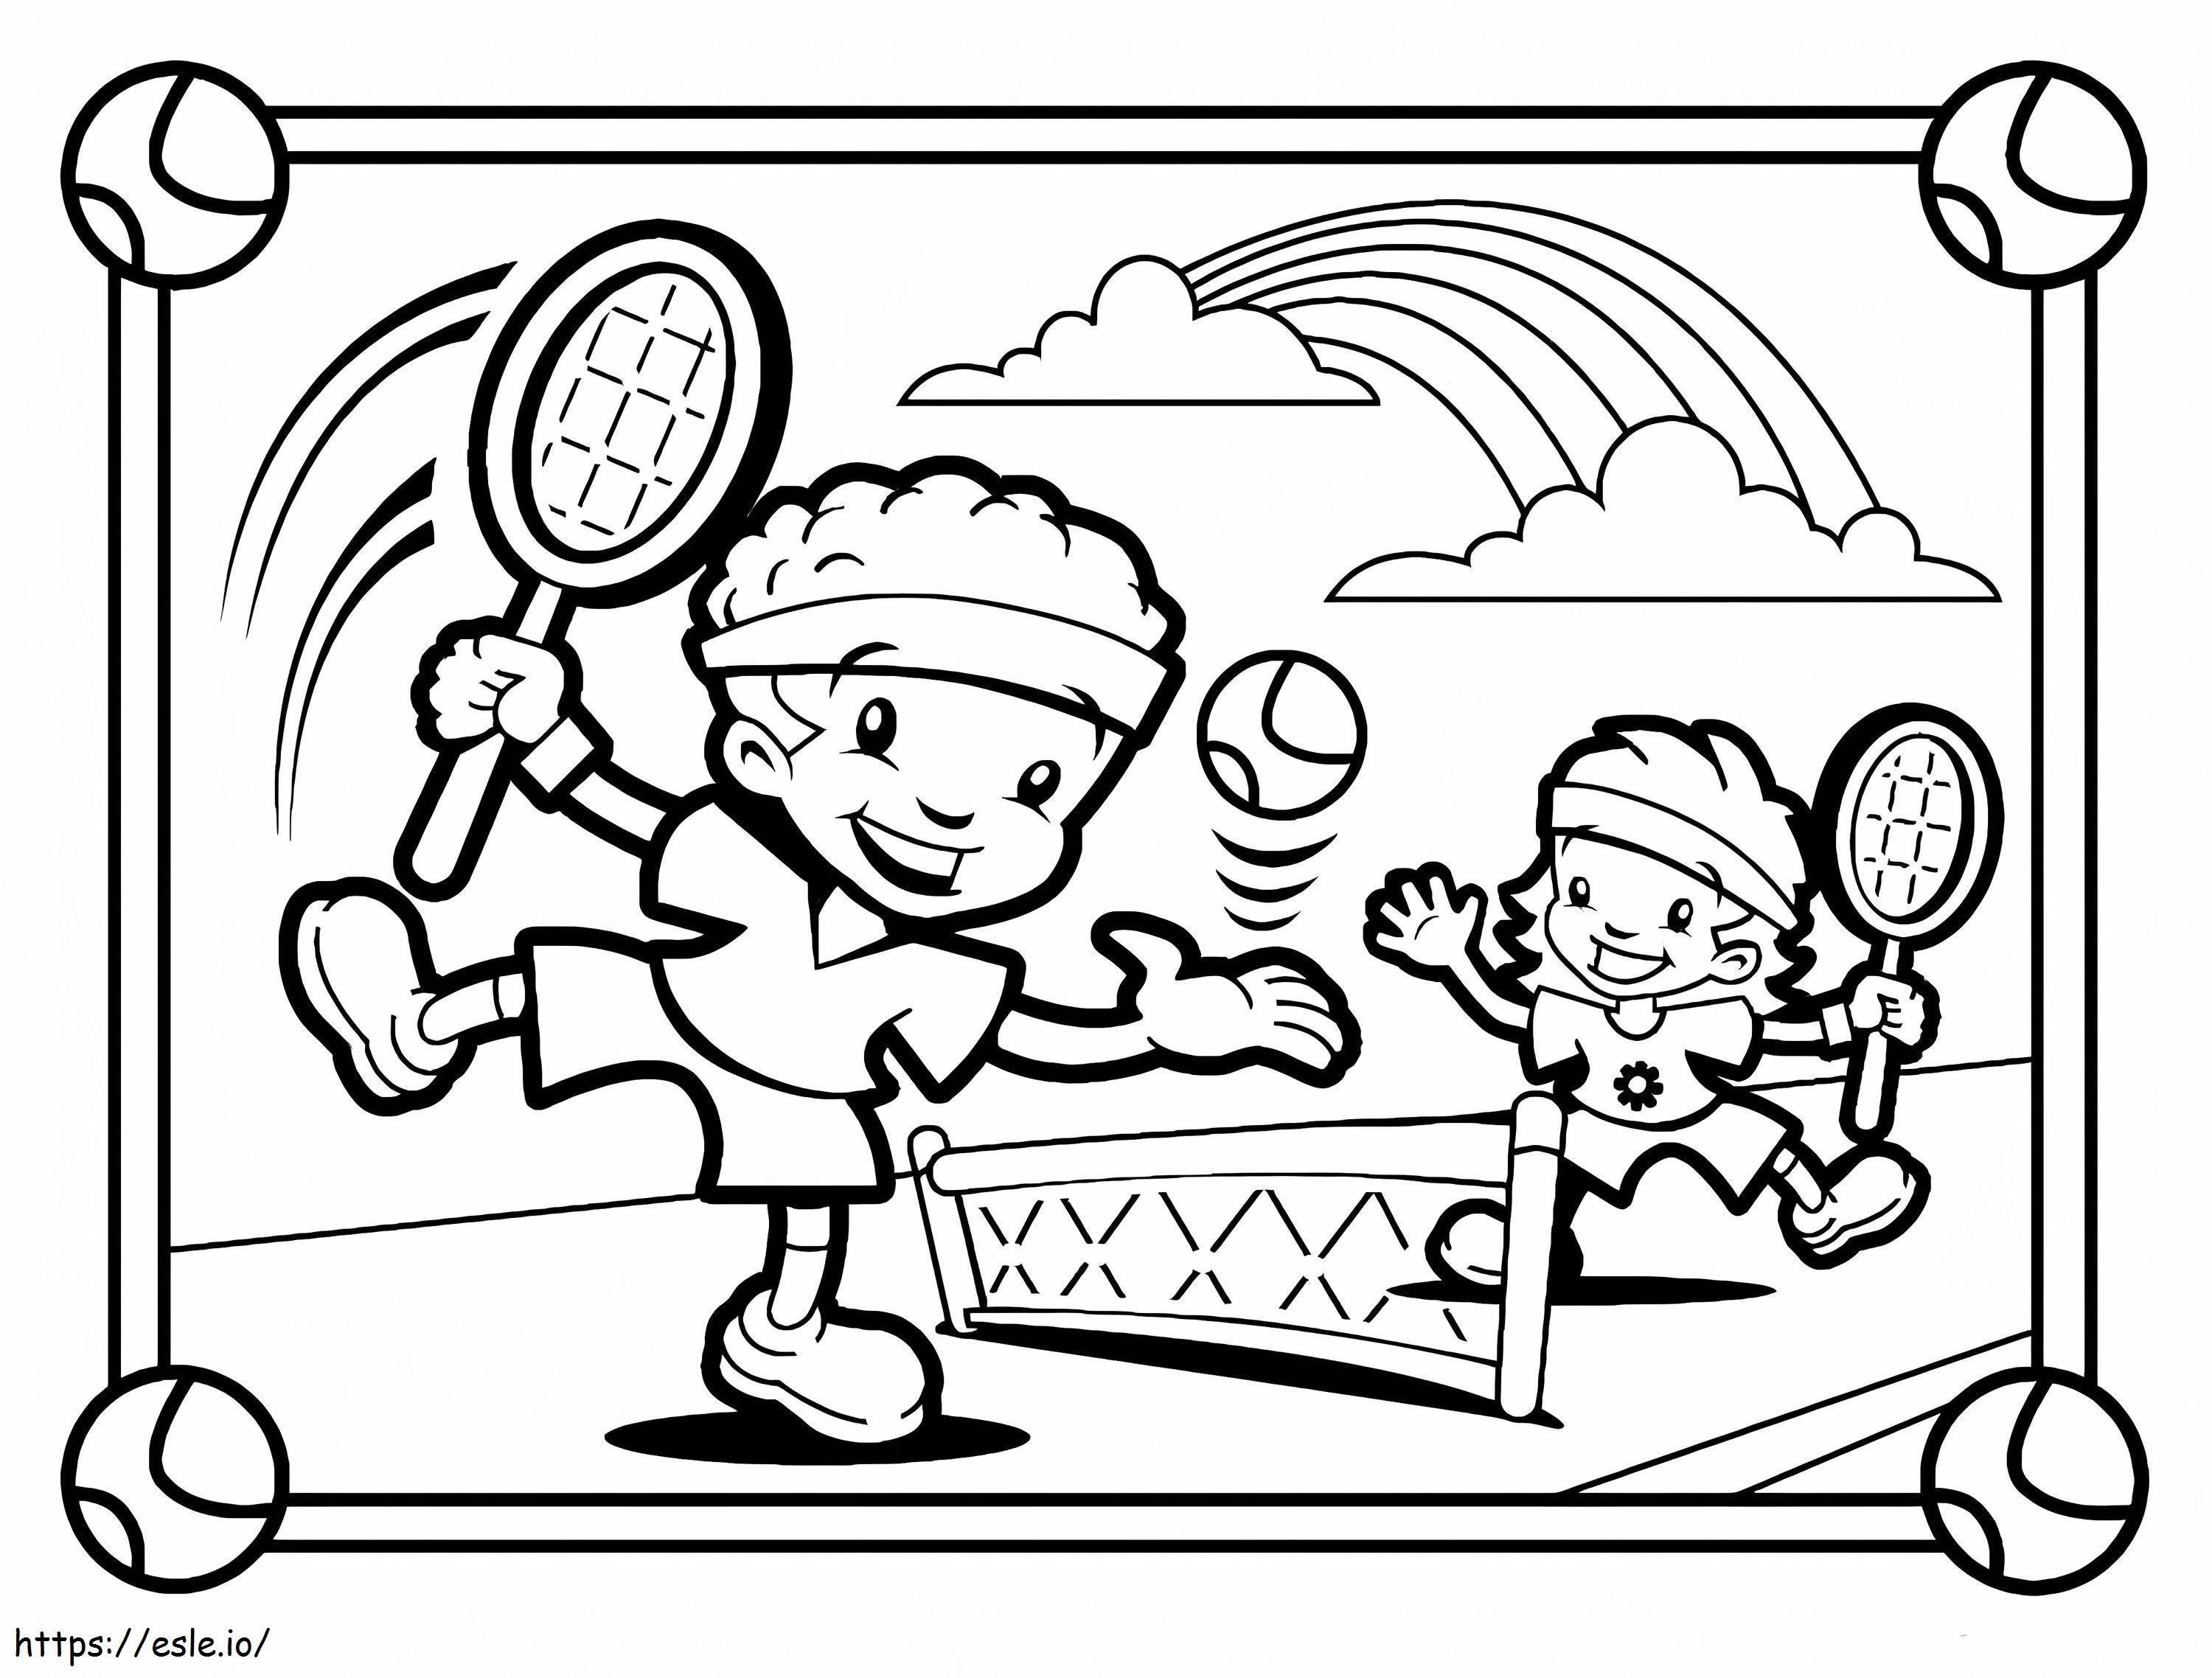 Zwei Kinder spielen Tennis ausmalbilder